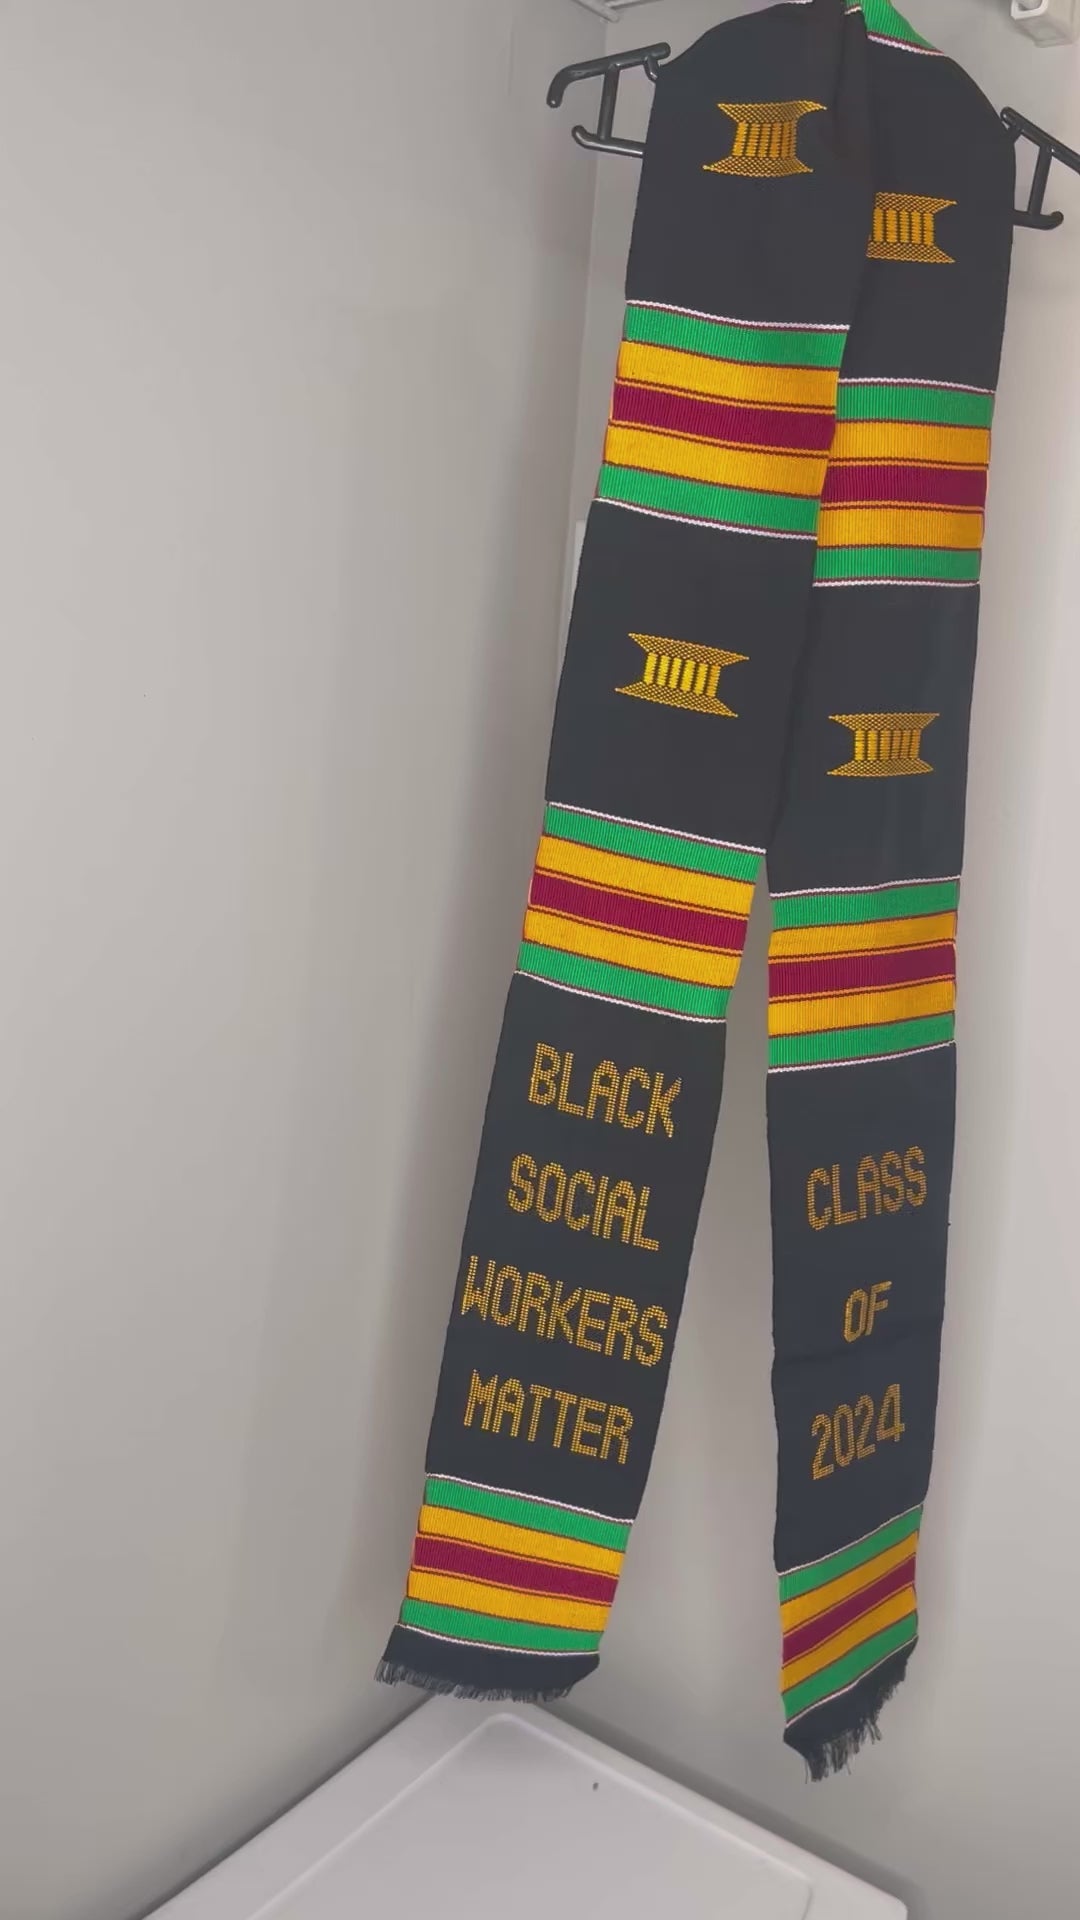 Black Social Workers Matter Kente Cloth Graduation Stole w/ Garment Care Bag